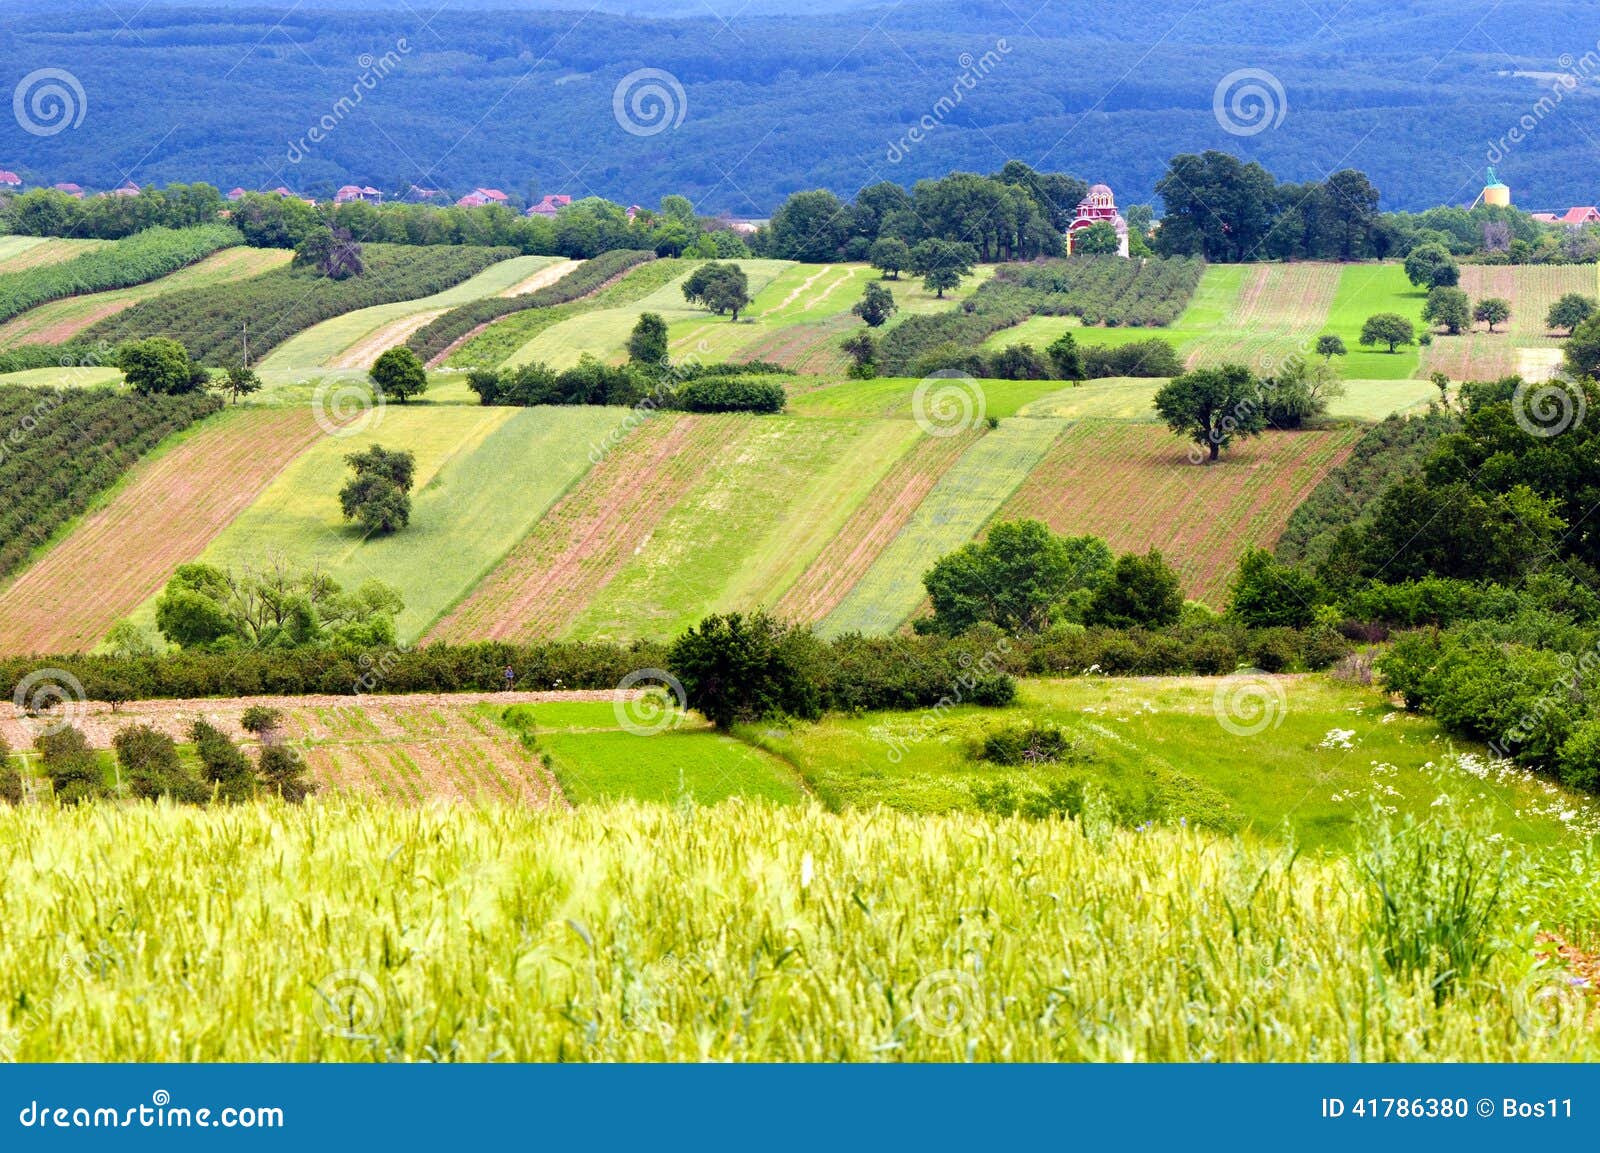 extensive rural landscape